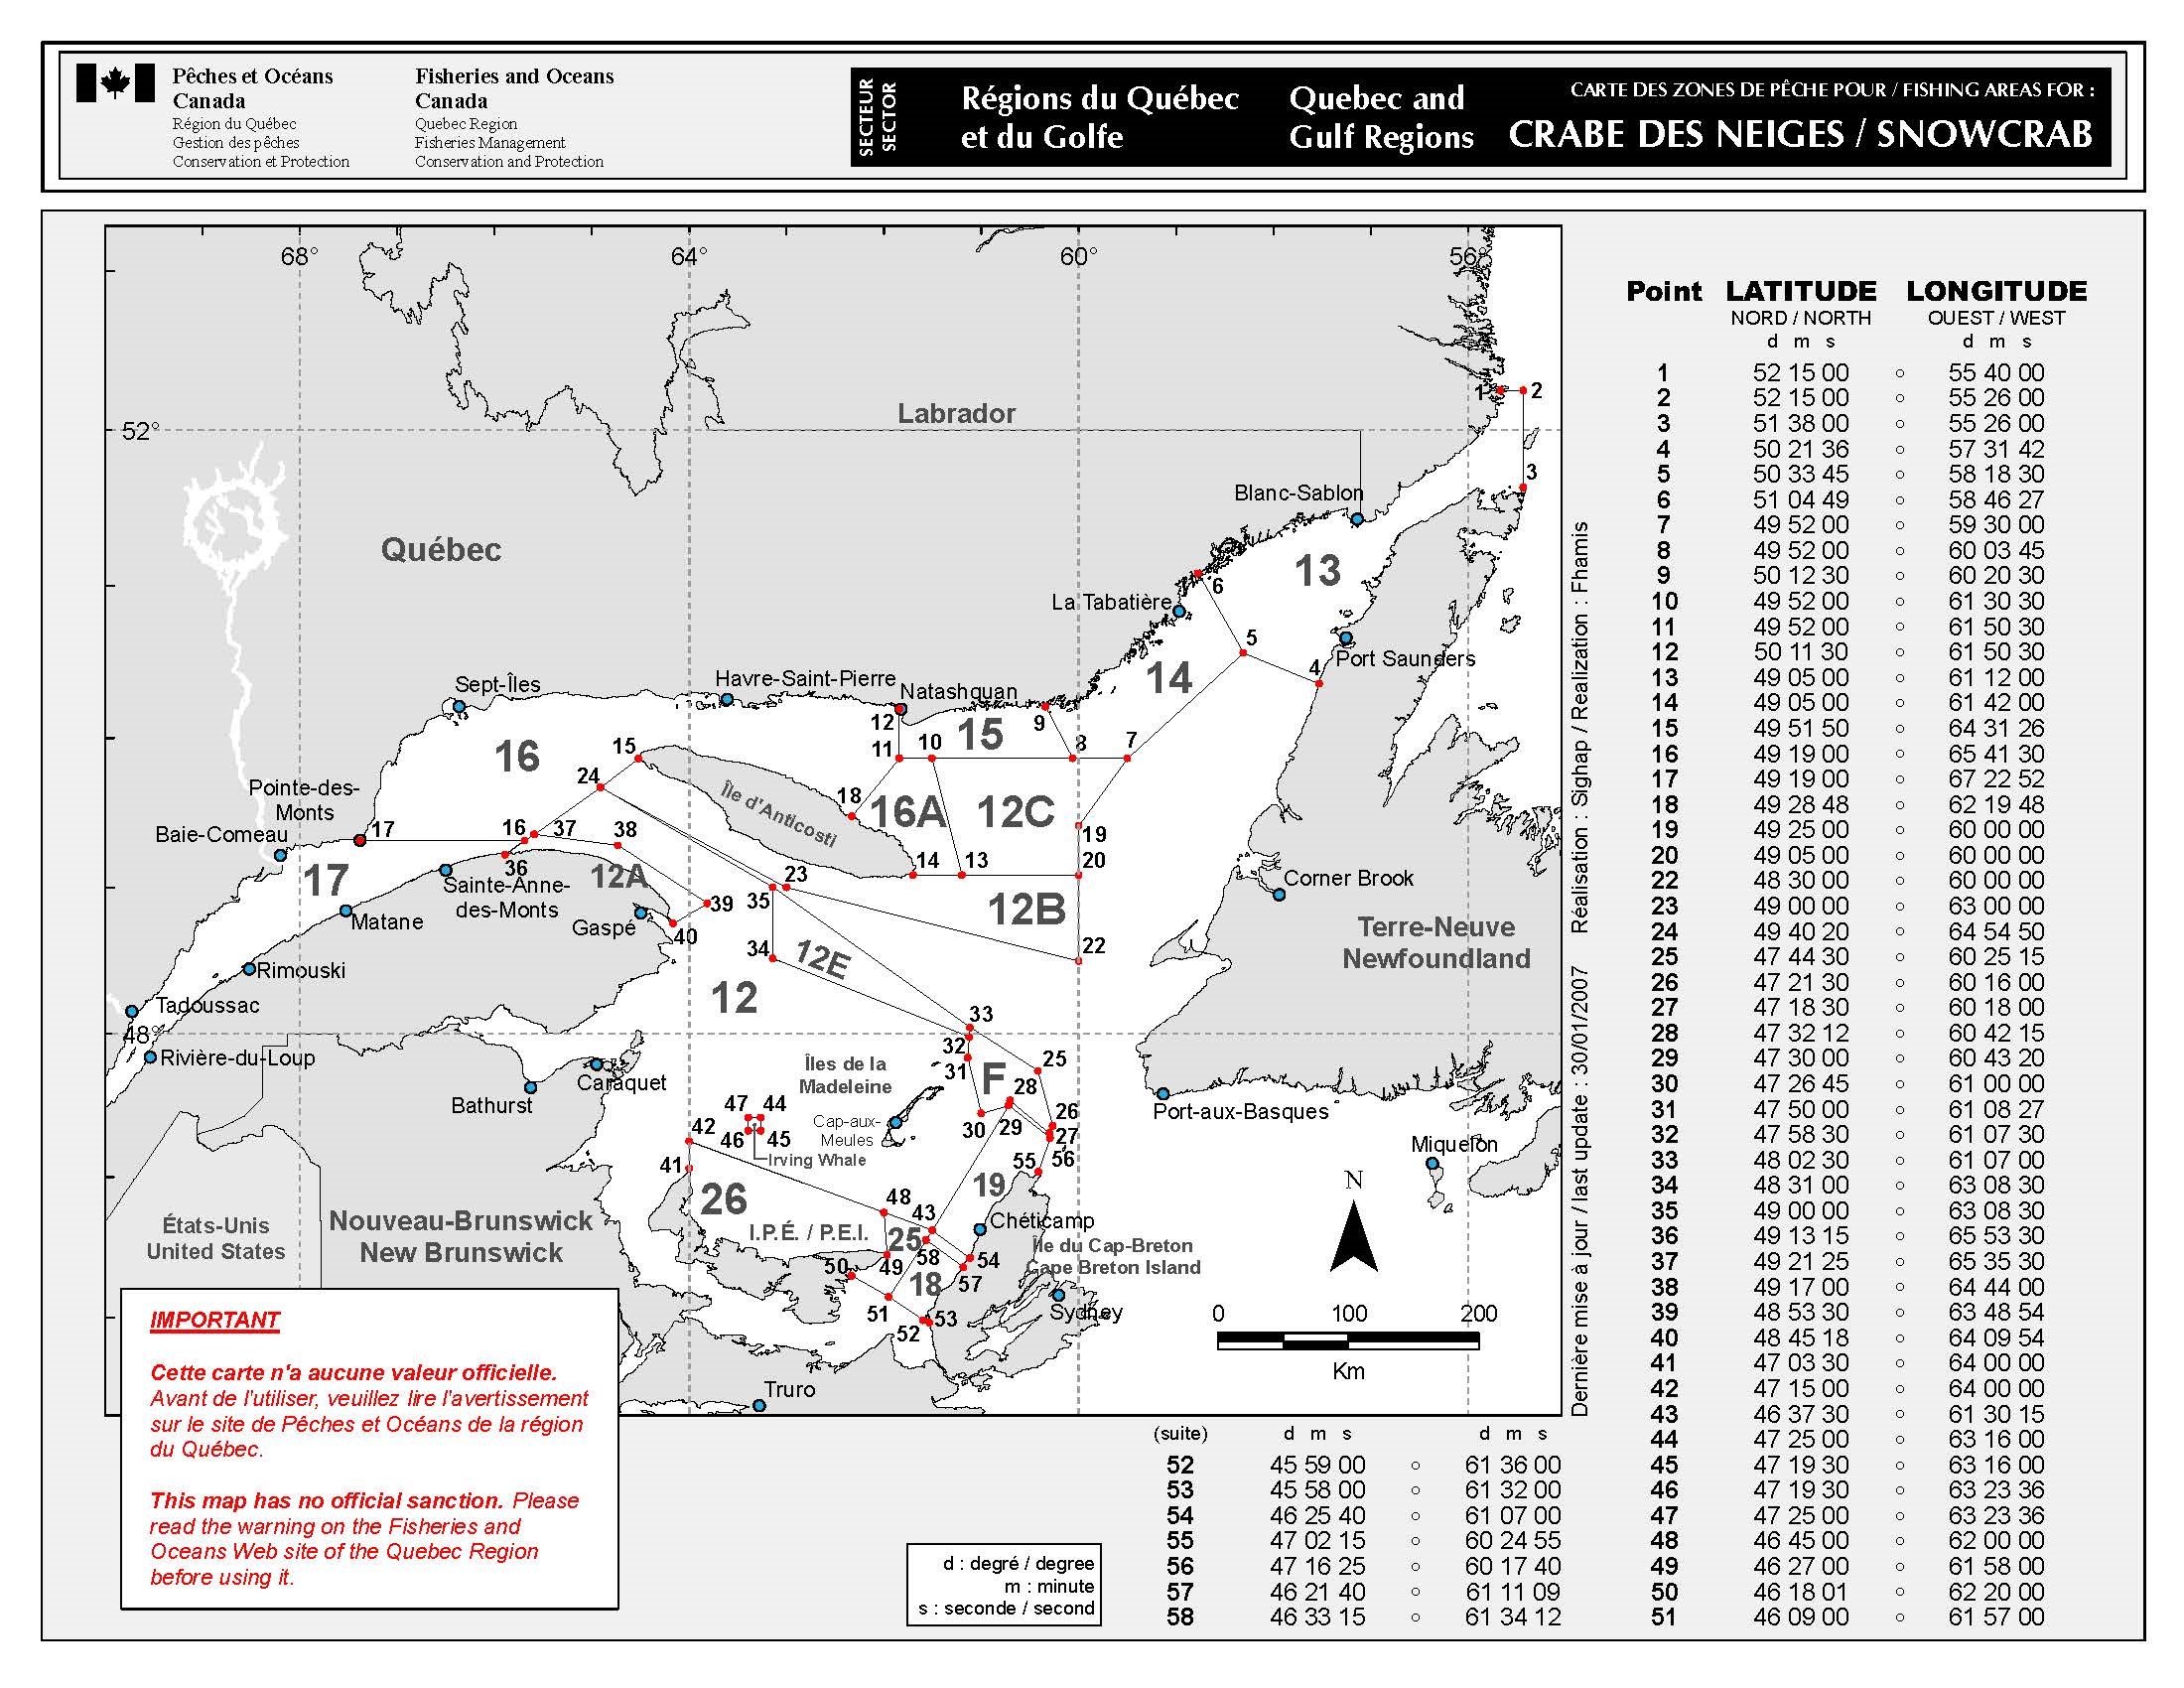 Illustration des zones de pêche au crabe des neiges dans l’estuaire et le golfe du Saint-Laurent depuis 2014